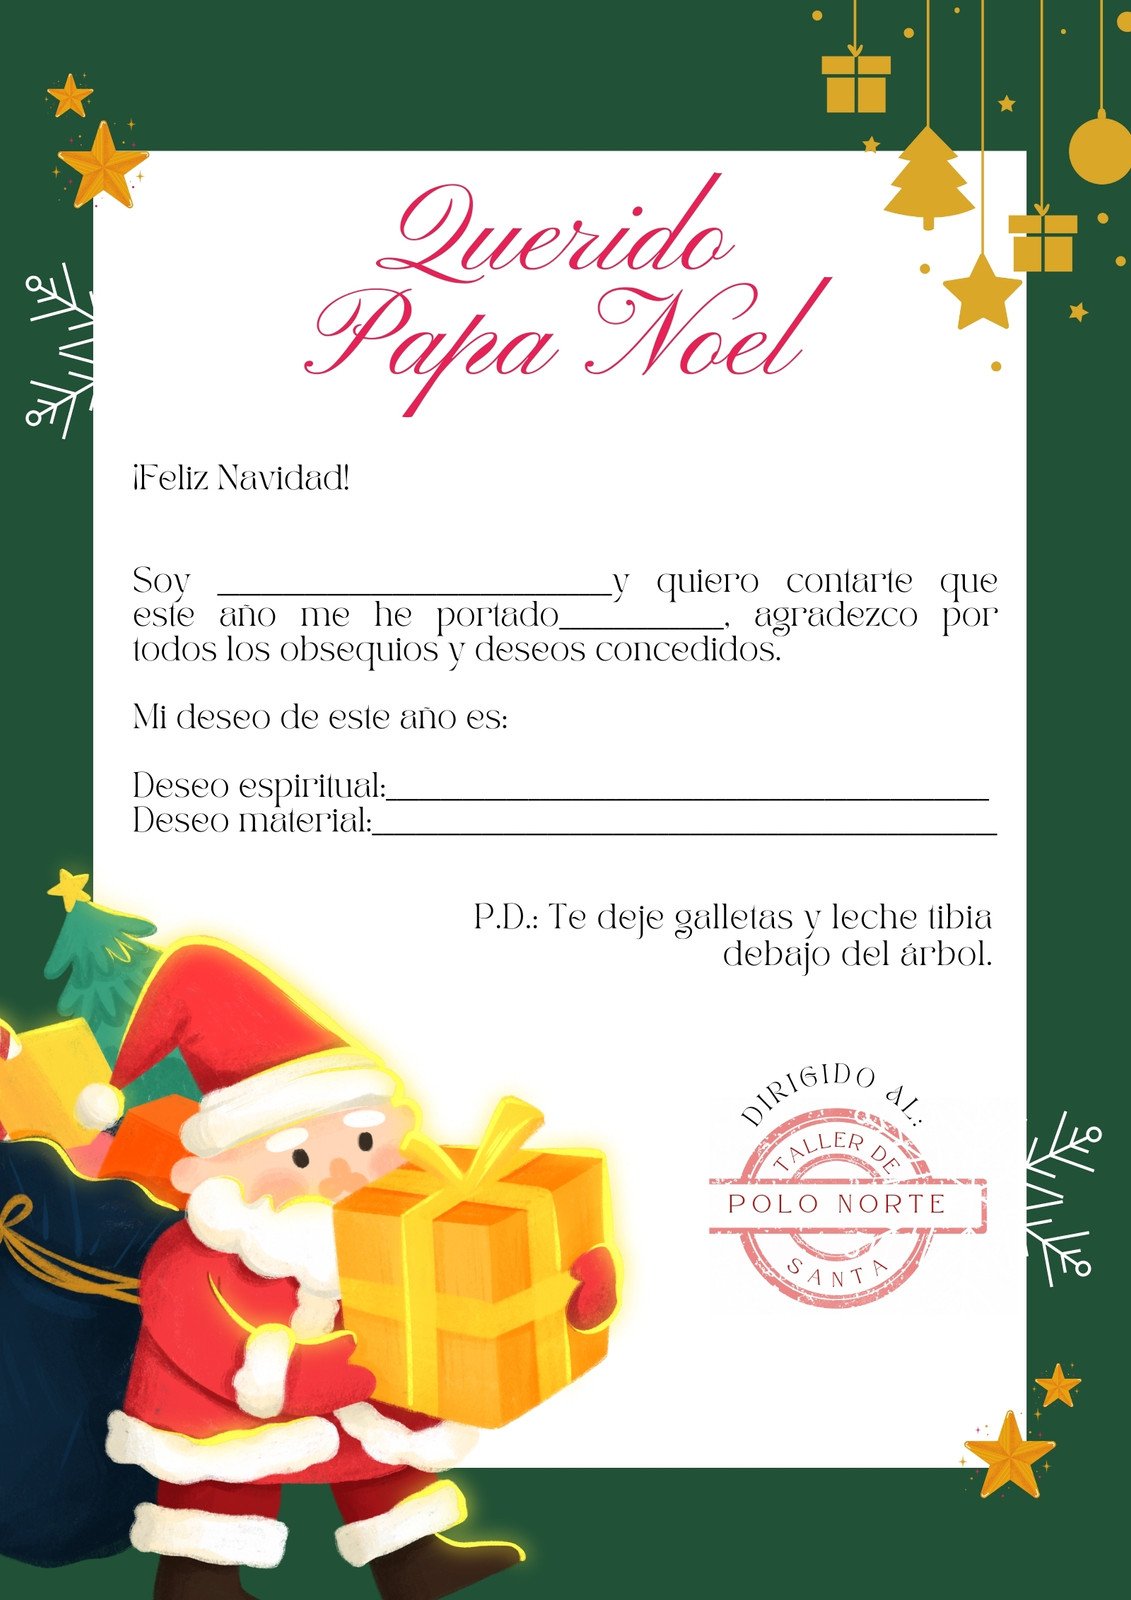 Modelos Carta Papa Noel Plantillas de cartas para Papá Noel gratis para editar | Canva